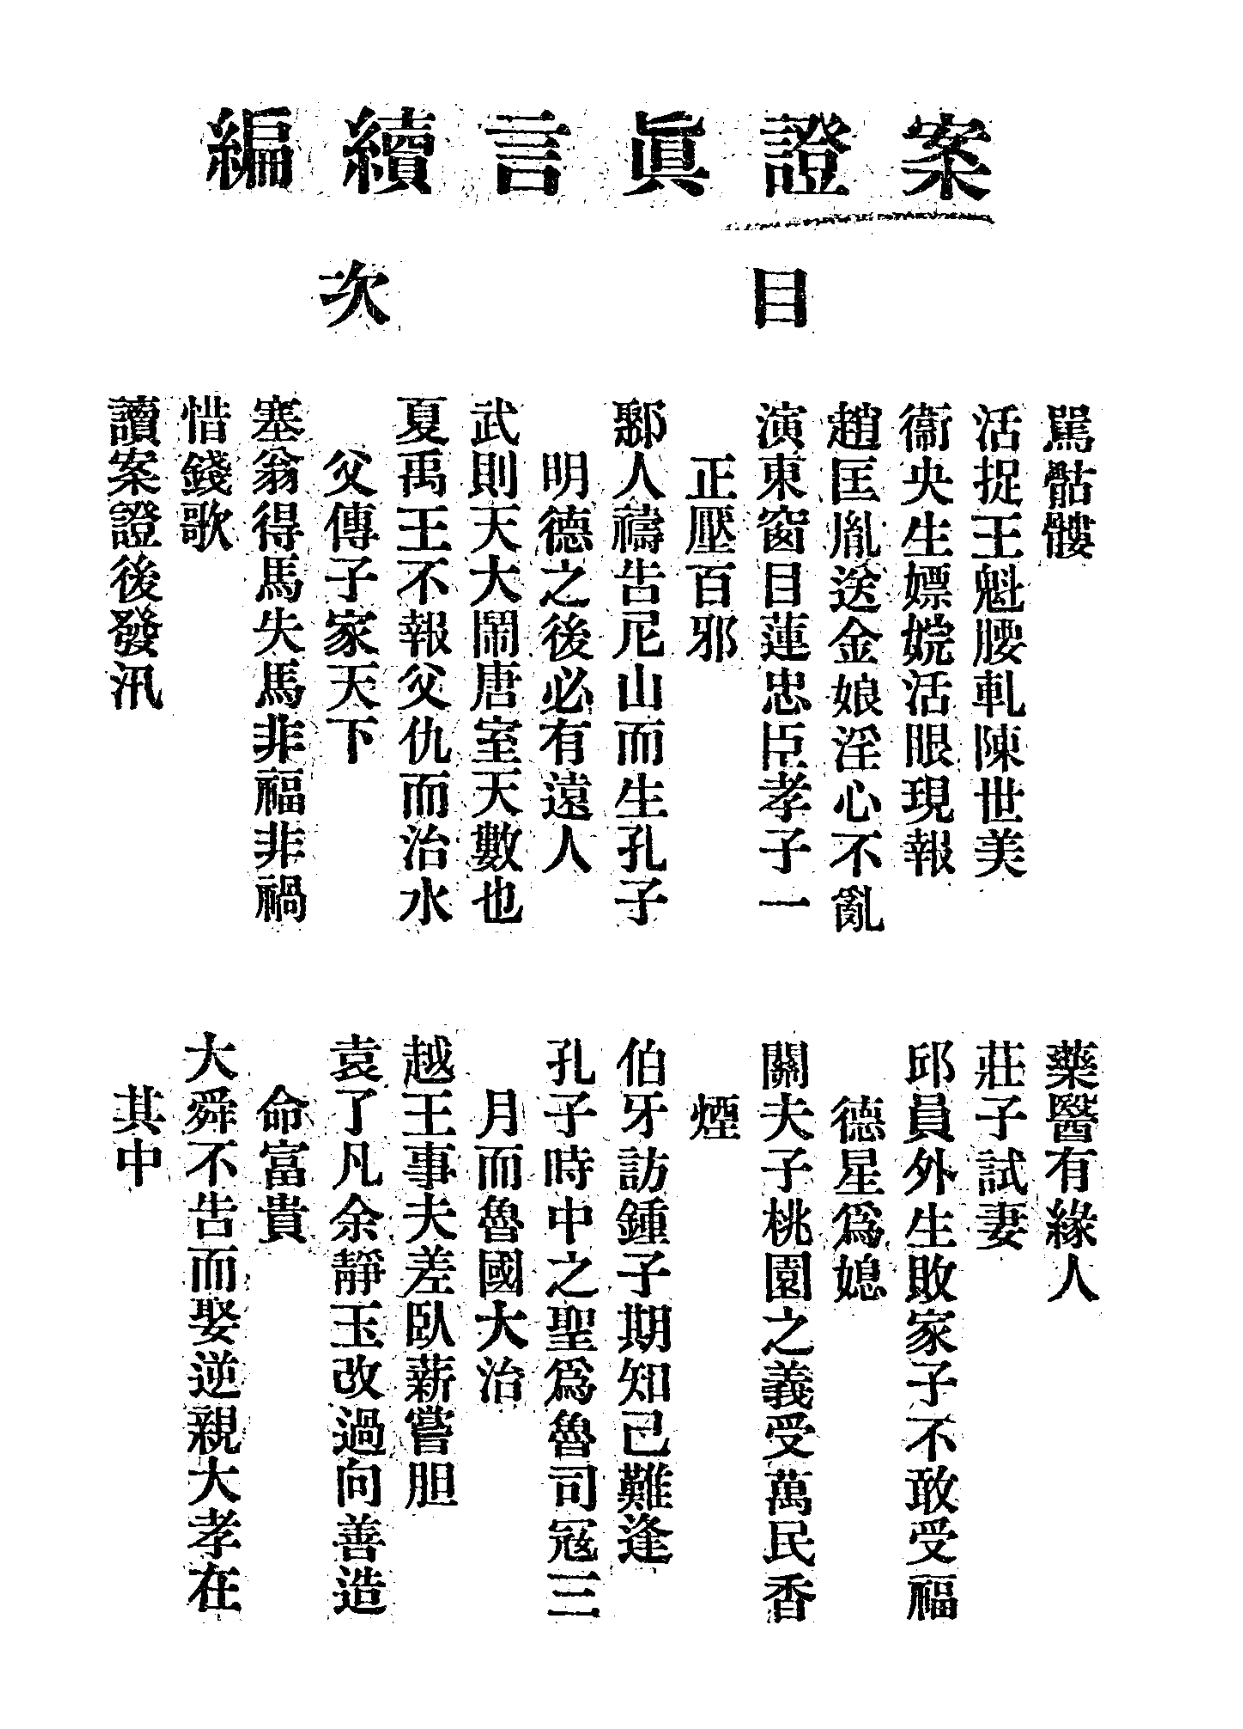 File:Anzheng zhenyan xubian 1930.png